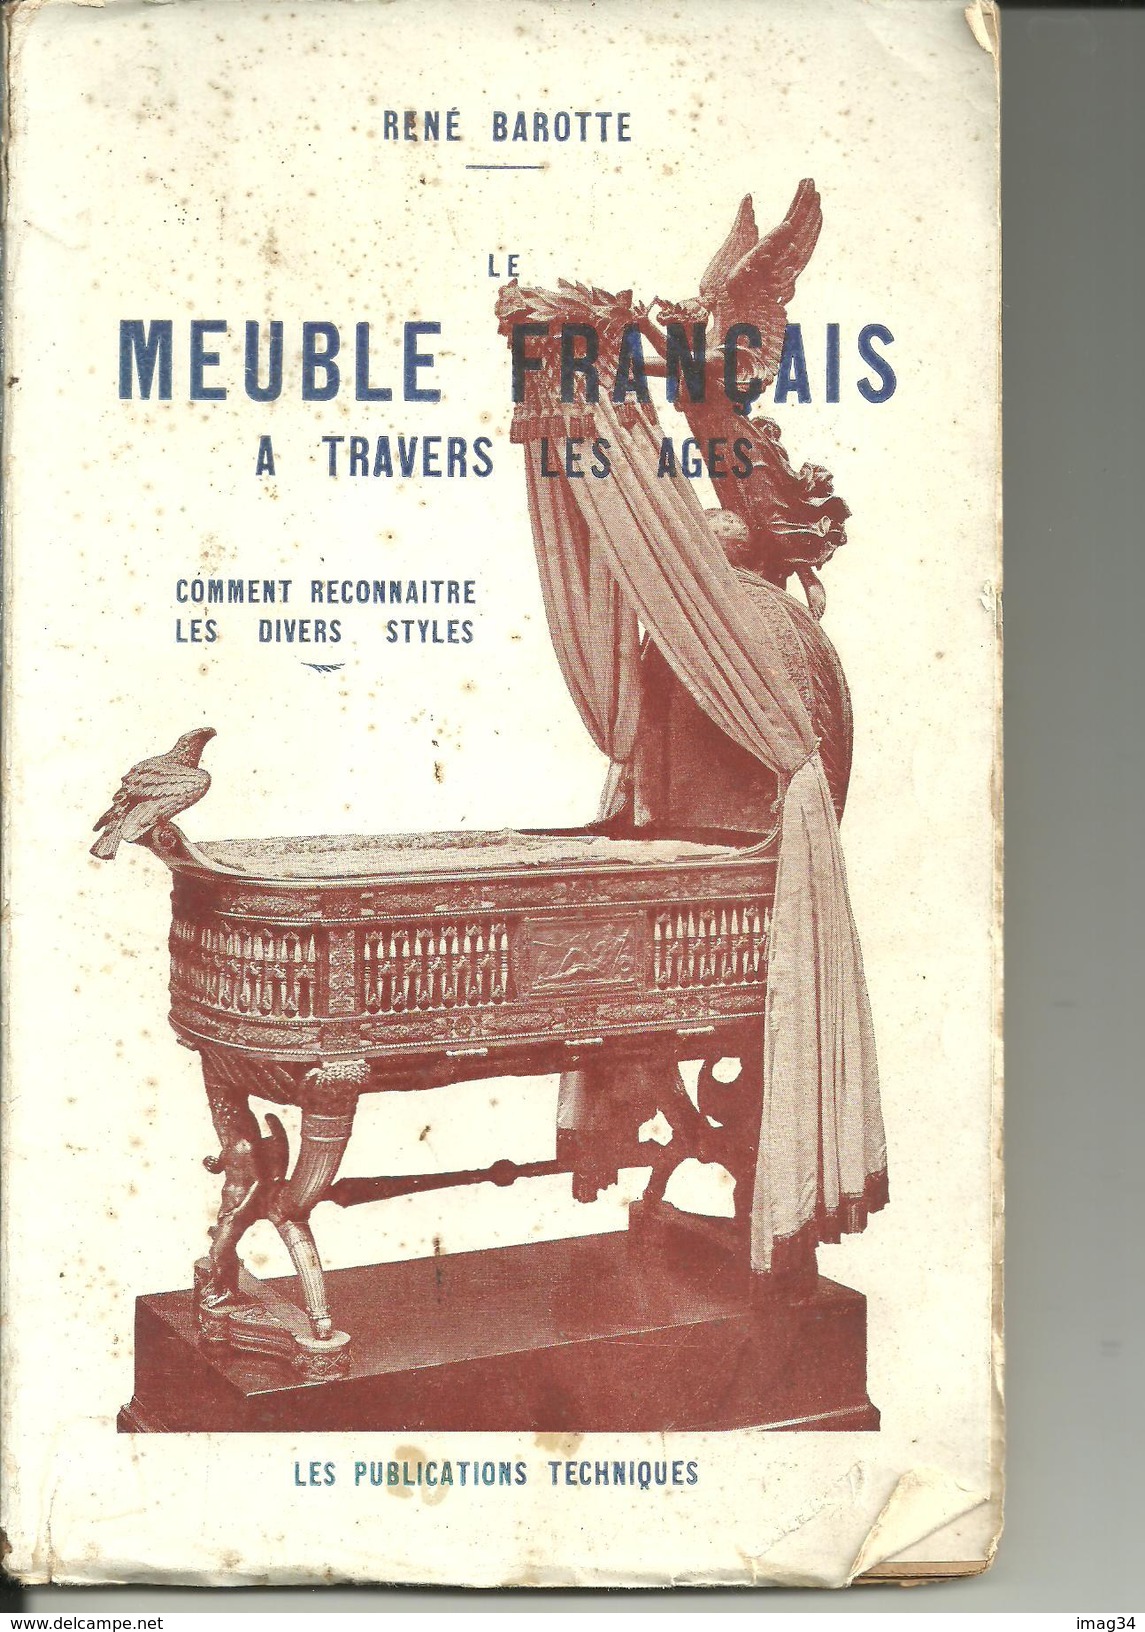 avec photos, meubles à travers les âges Barotte reconnaître les styles.french furniture Die Möbel francais livre ancien